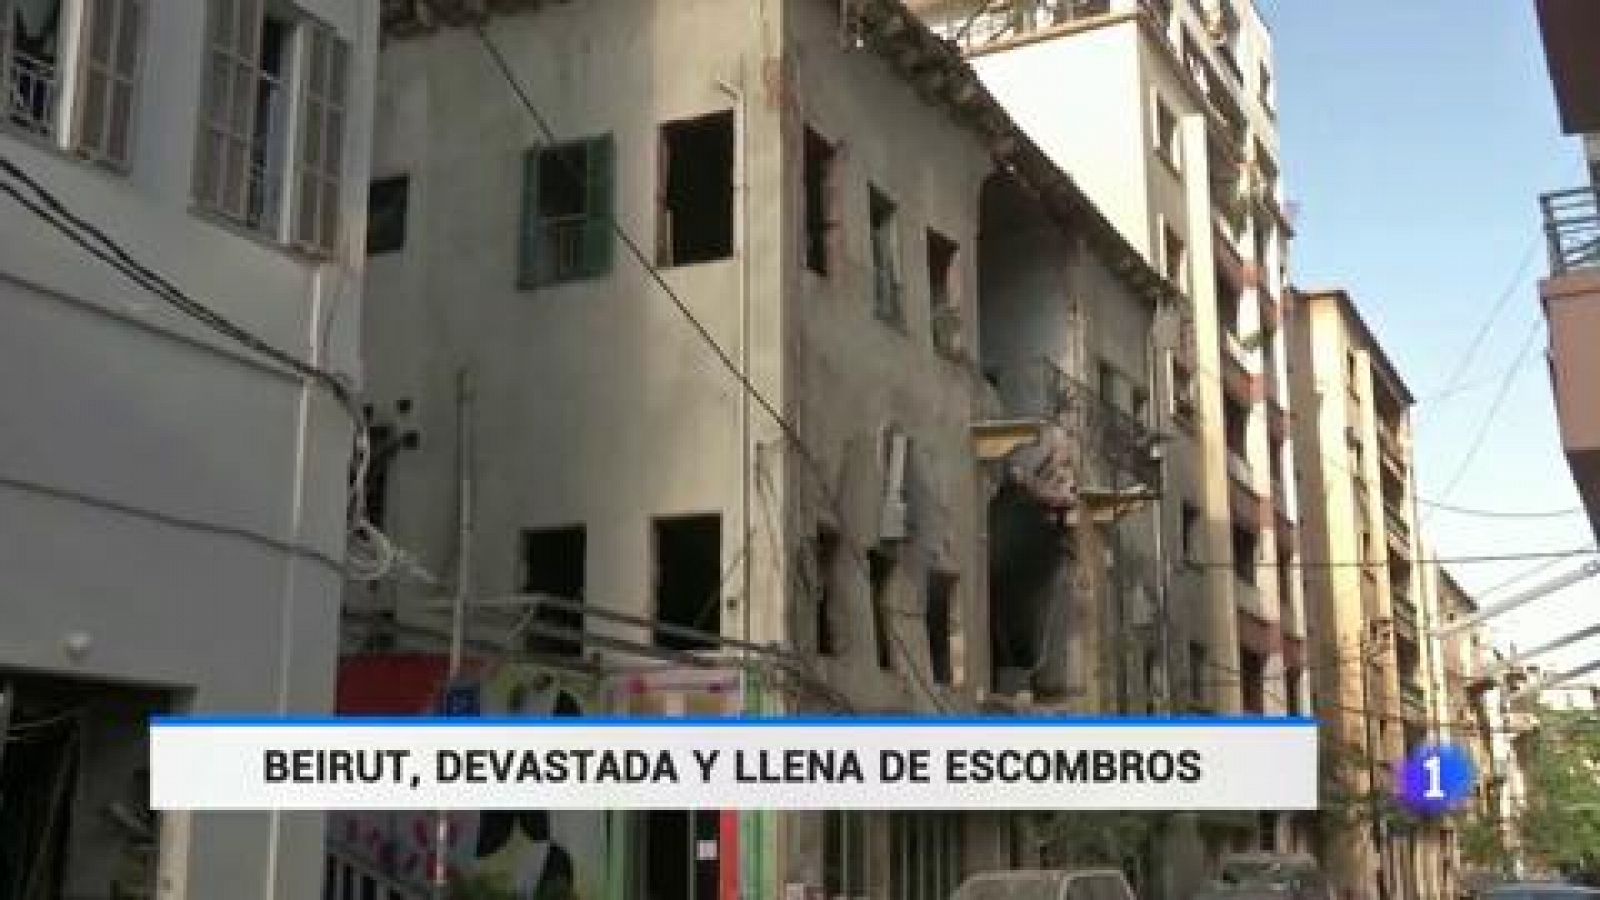 Telediario 1: Beirut, devastada y llena de escombros tras la explosión en el puerto, clama contra los políticos corruptos | RTVE Play